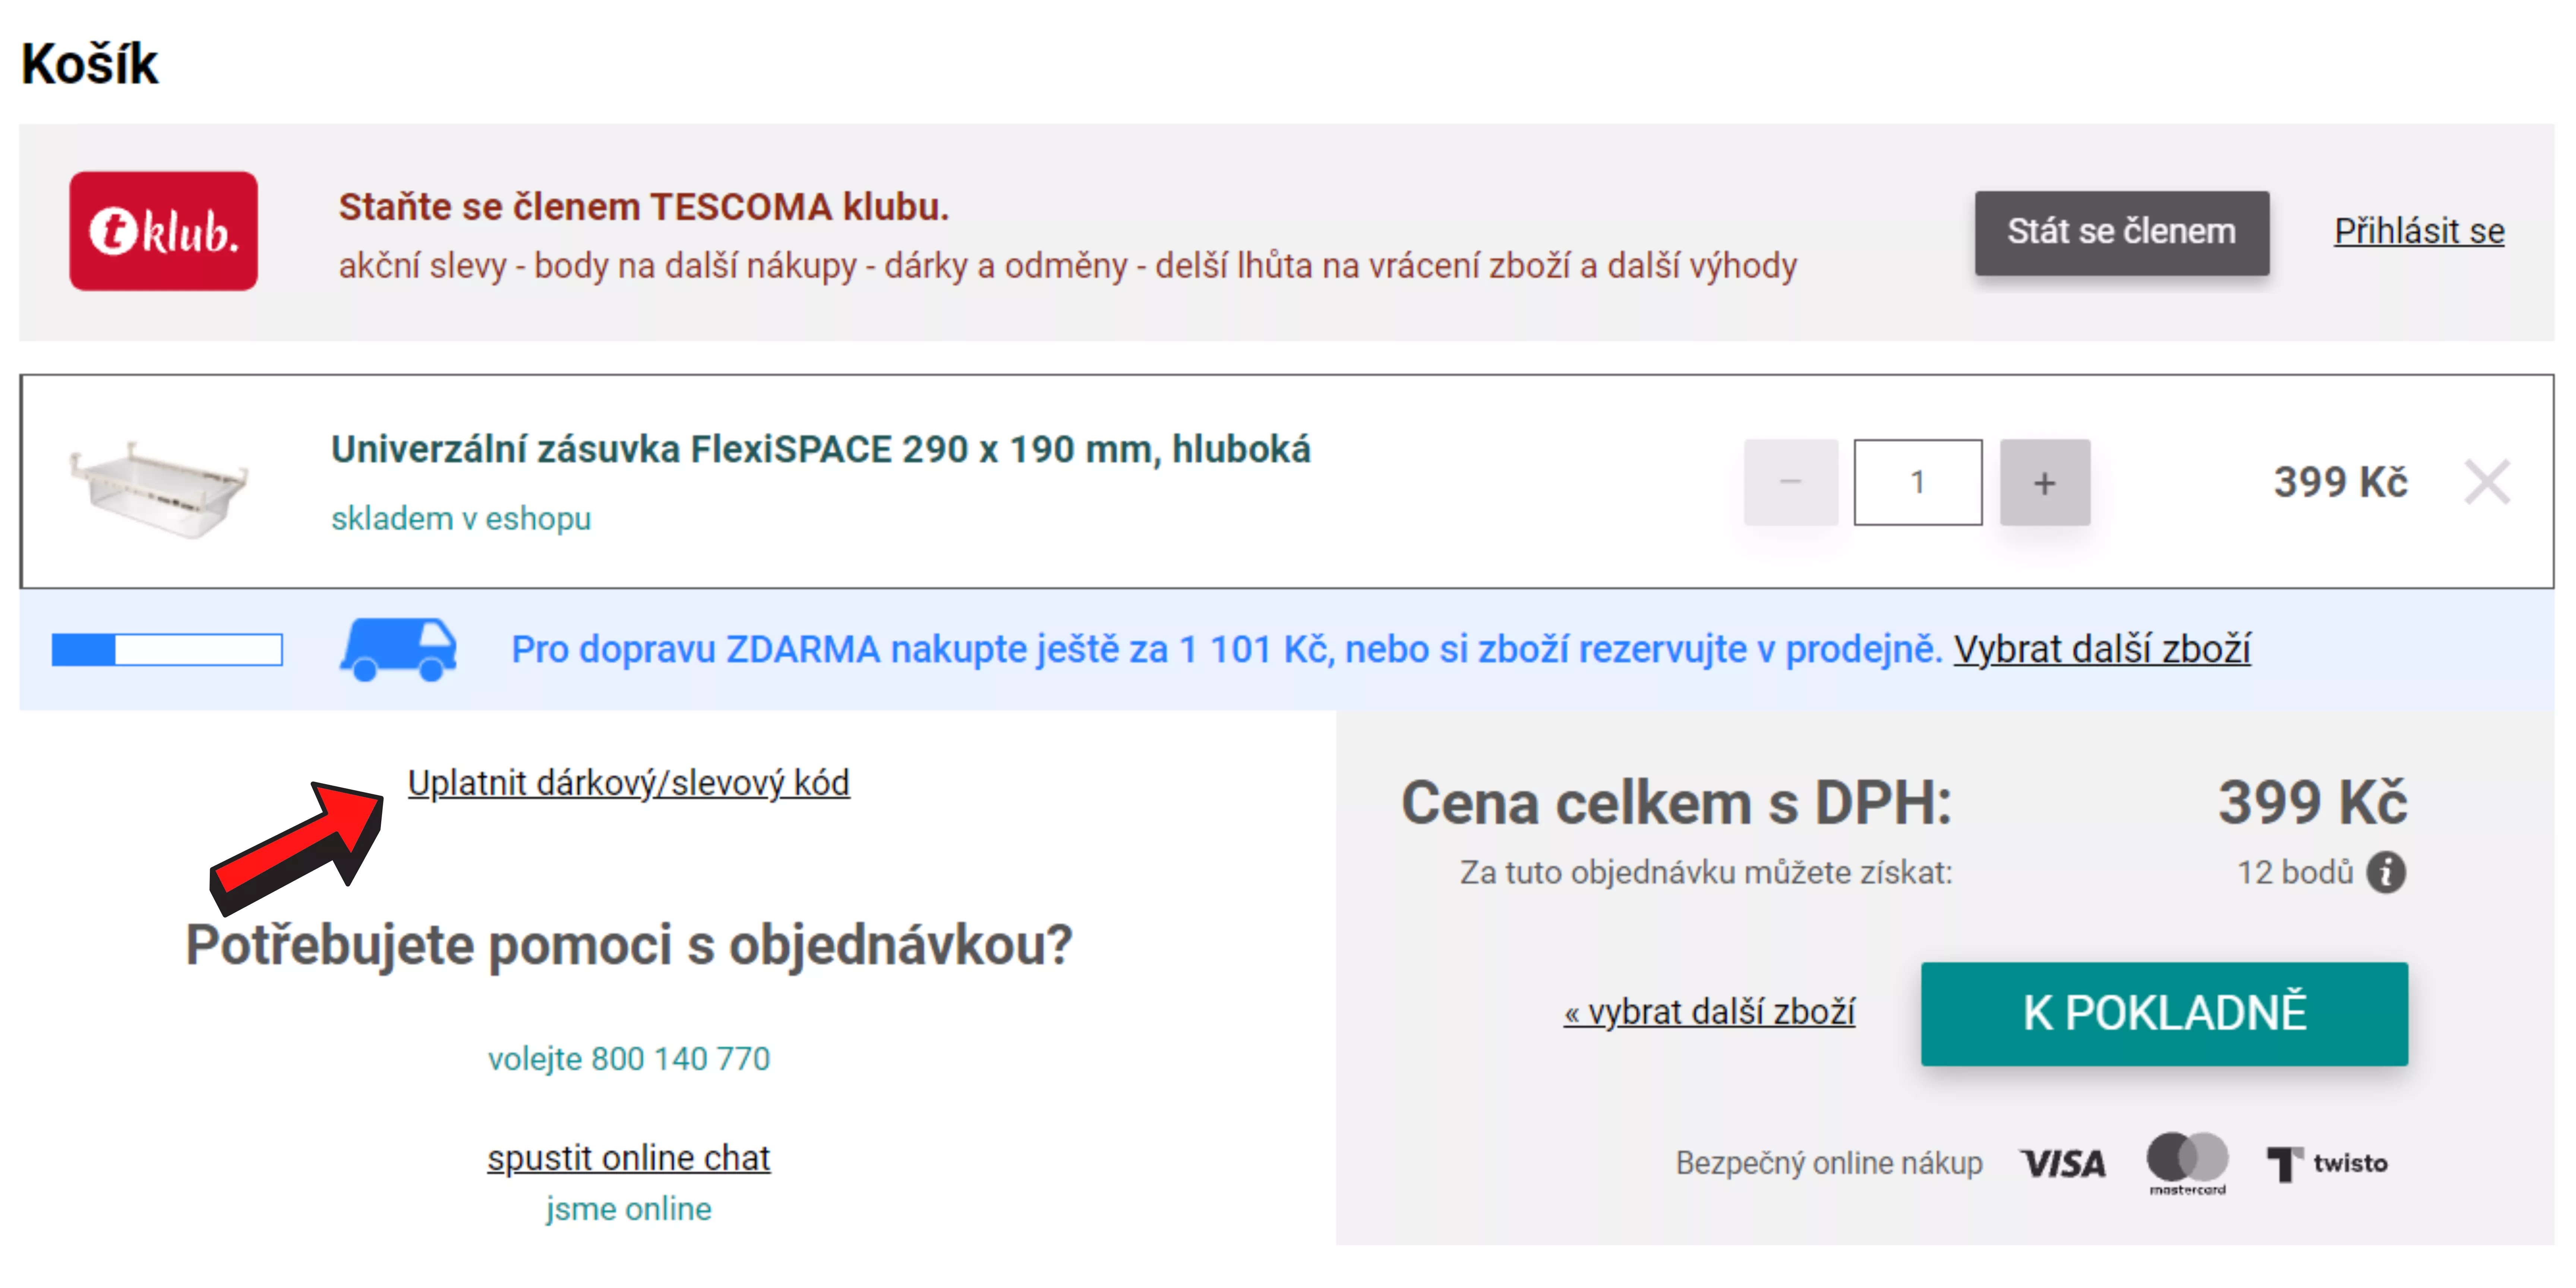 Tescoma.cz - slevový kupón